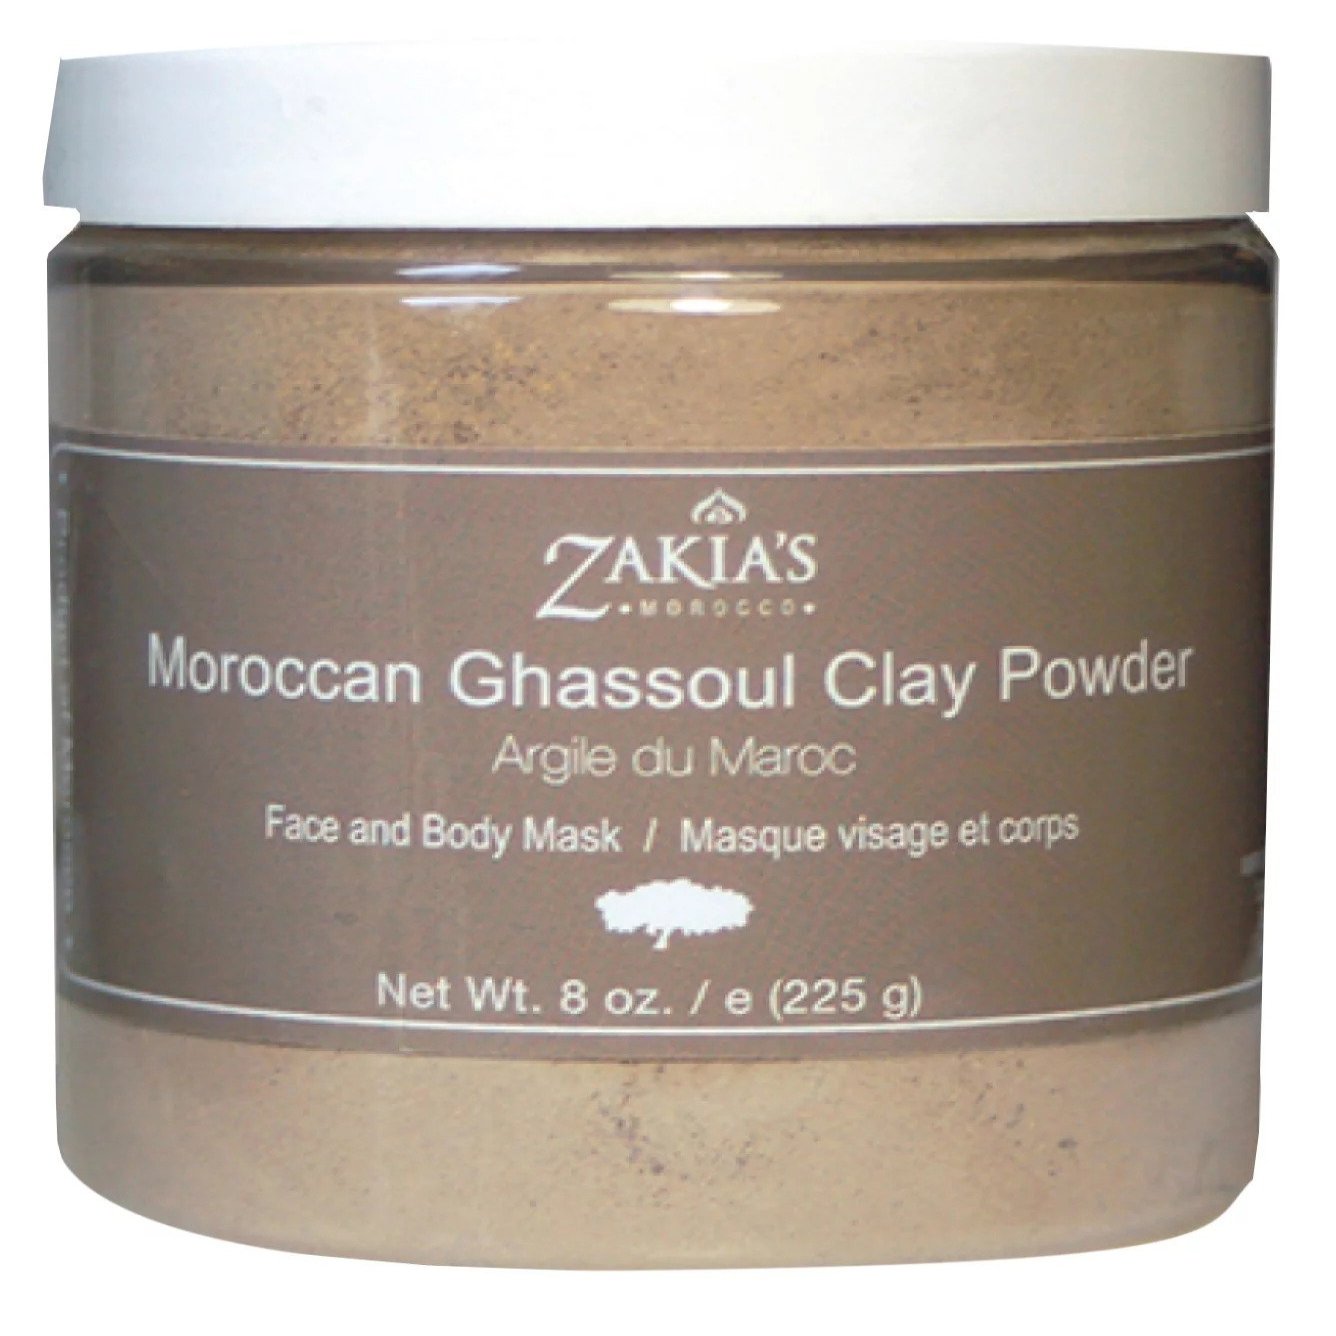 Zakia's Moroccan Ghassoul Clay Powder